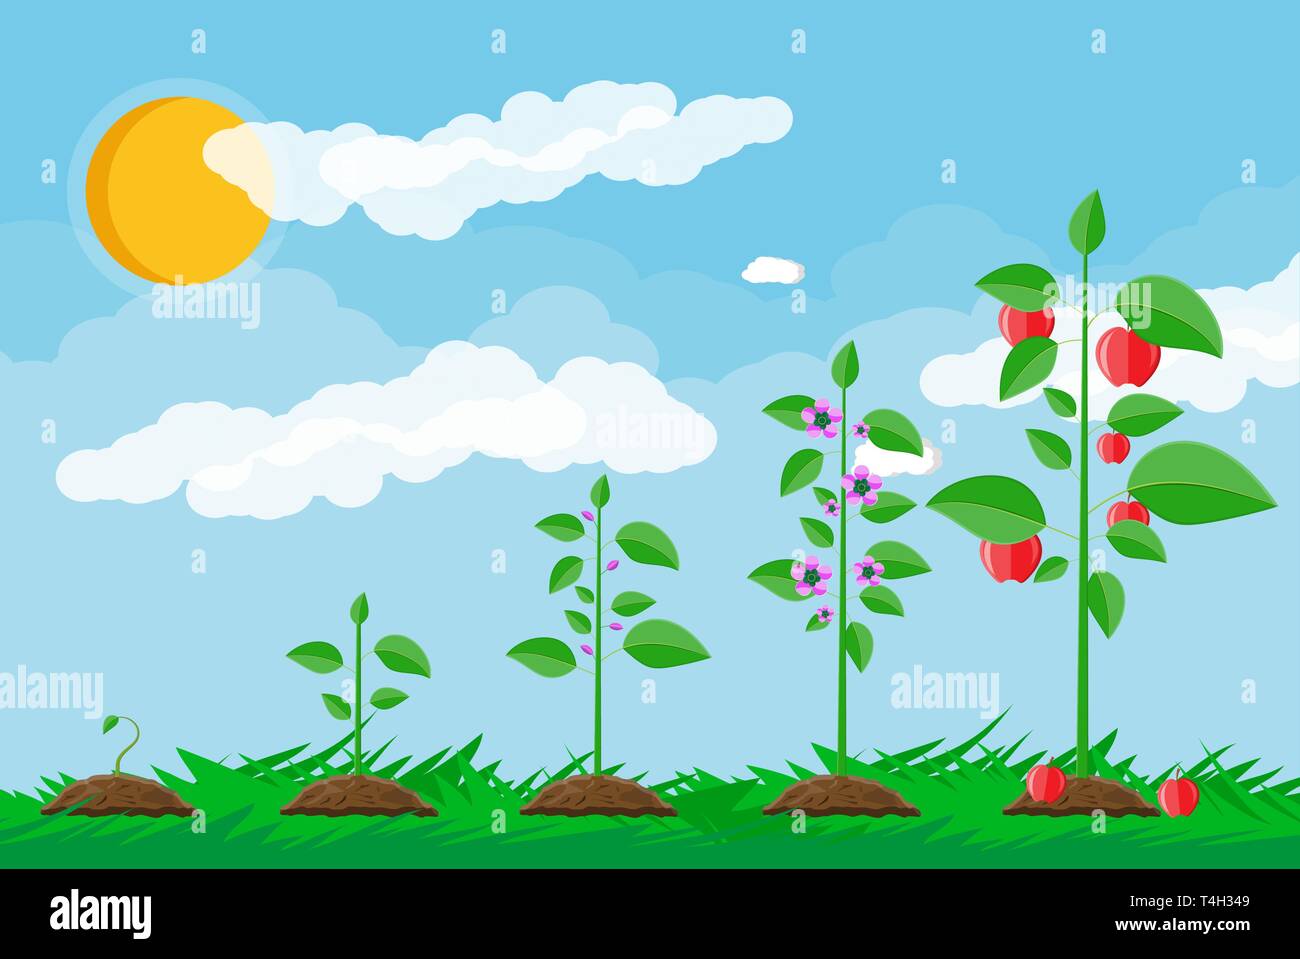 El crecimiento de la planta, de brotar a la fruta. Plantar un árbol.  Plántulas de plantas de jardinería. Línea de tiempo. La hierba, el cielo  con nubes y sol. Estilo plano illustrati